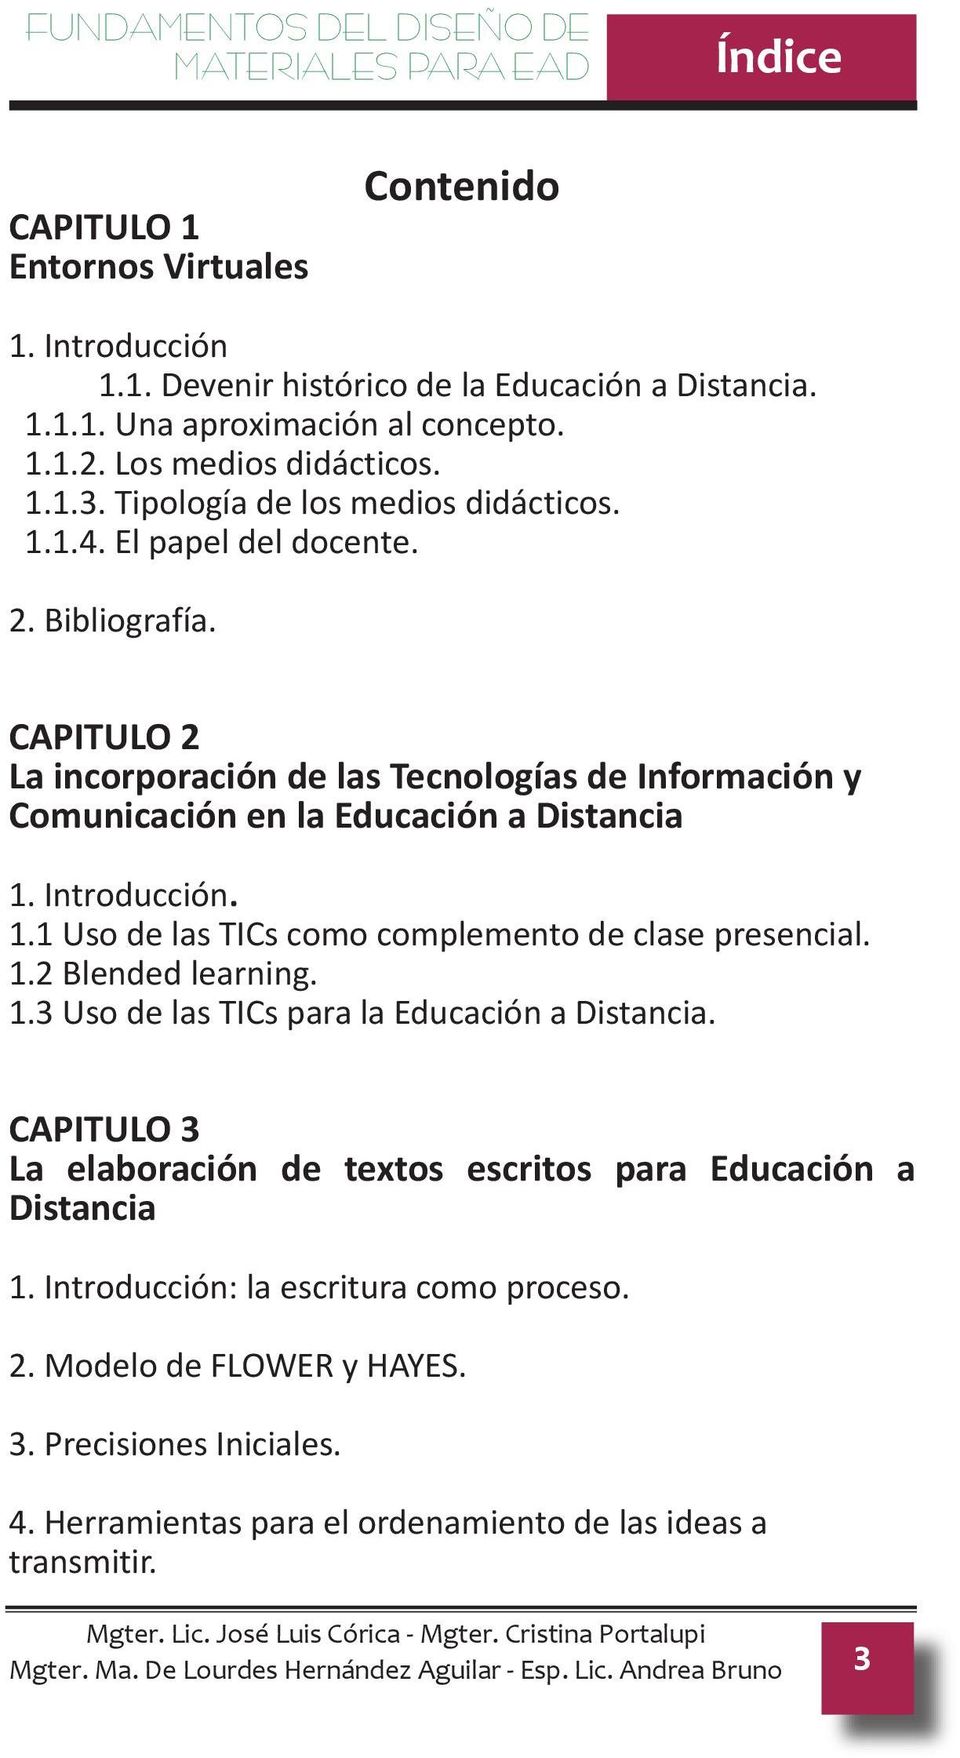 CAPITULO 2 La incorporación de las Tecnologías de Información y Comunicación en la Educación a Distancia 1. Introducción. 1.1 Uso de las TICs como complemento de clase presencial. 1.2 Blended learning.